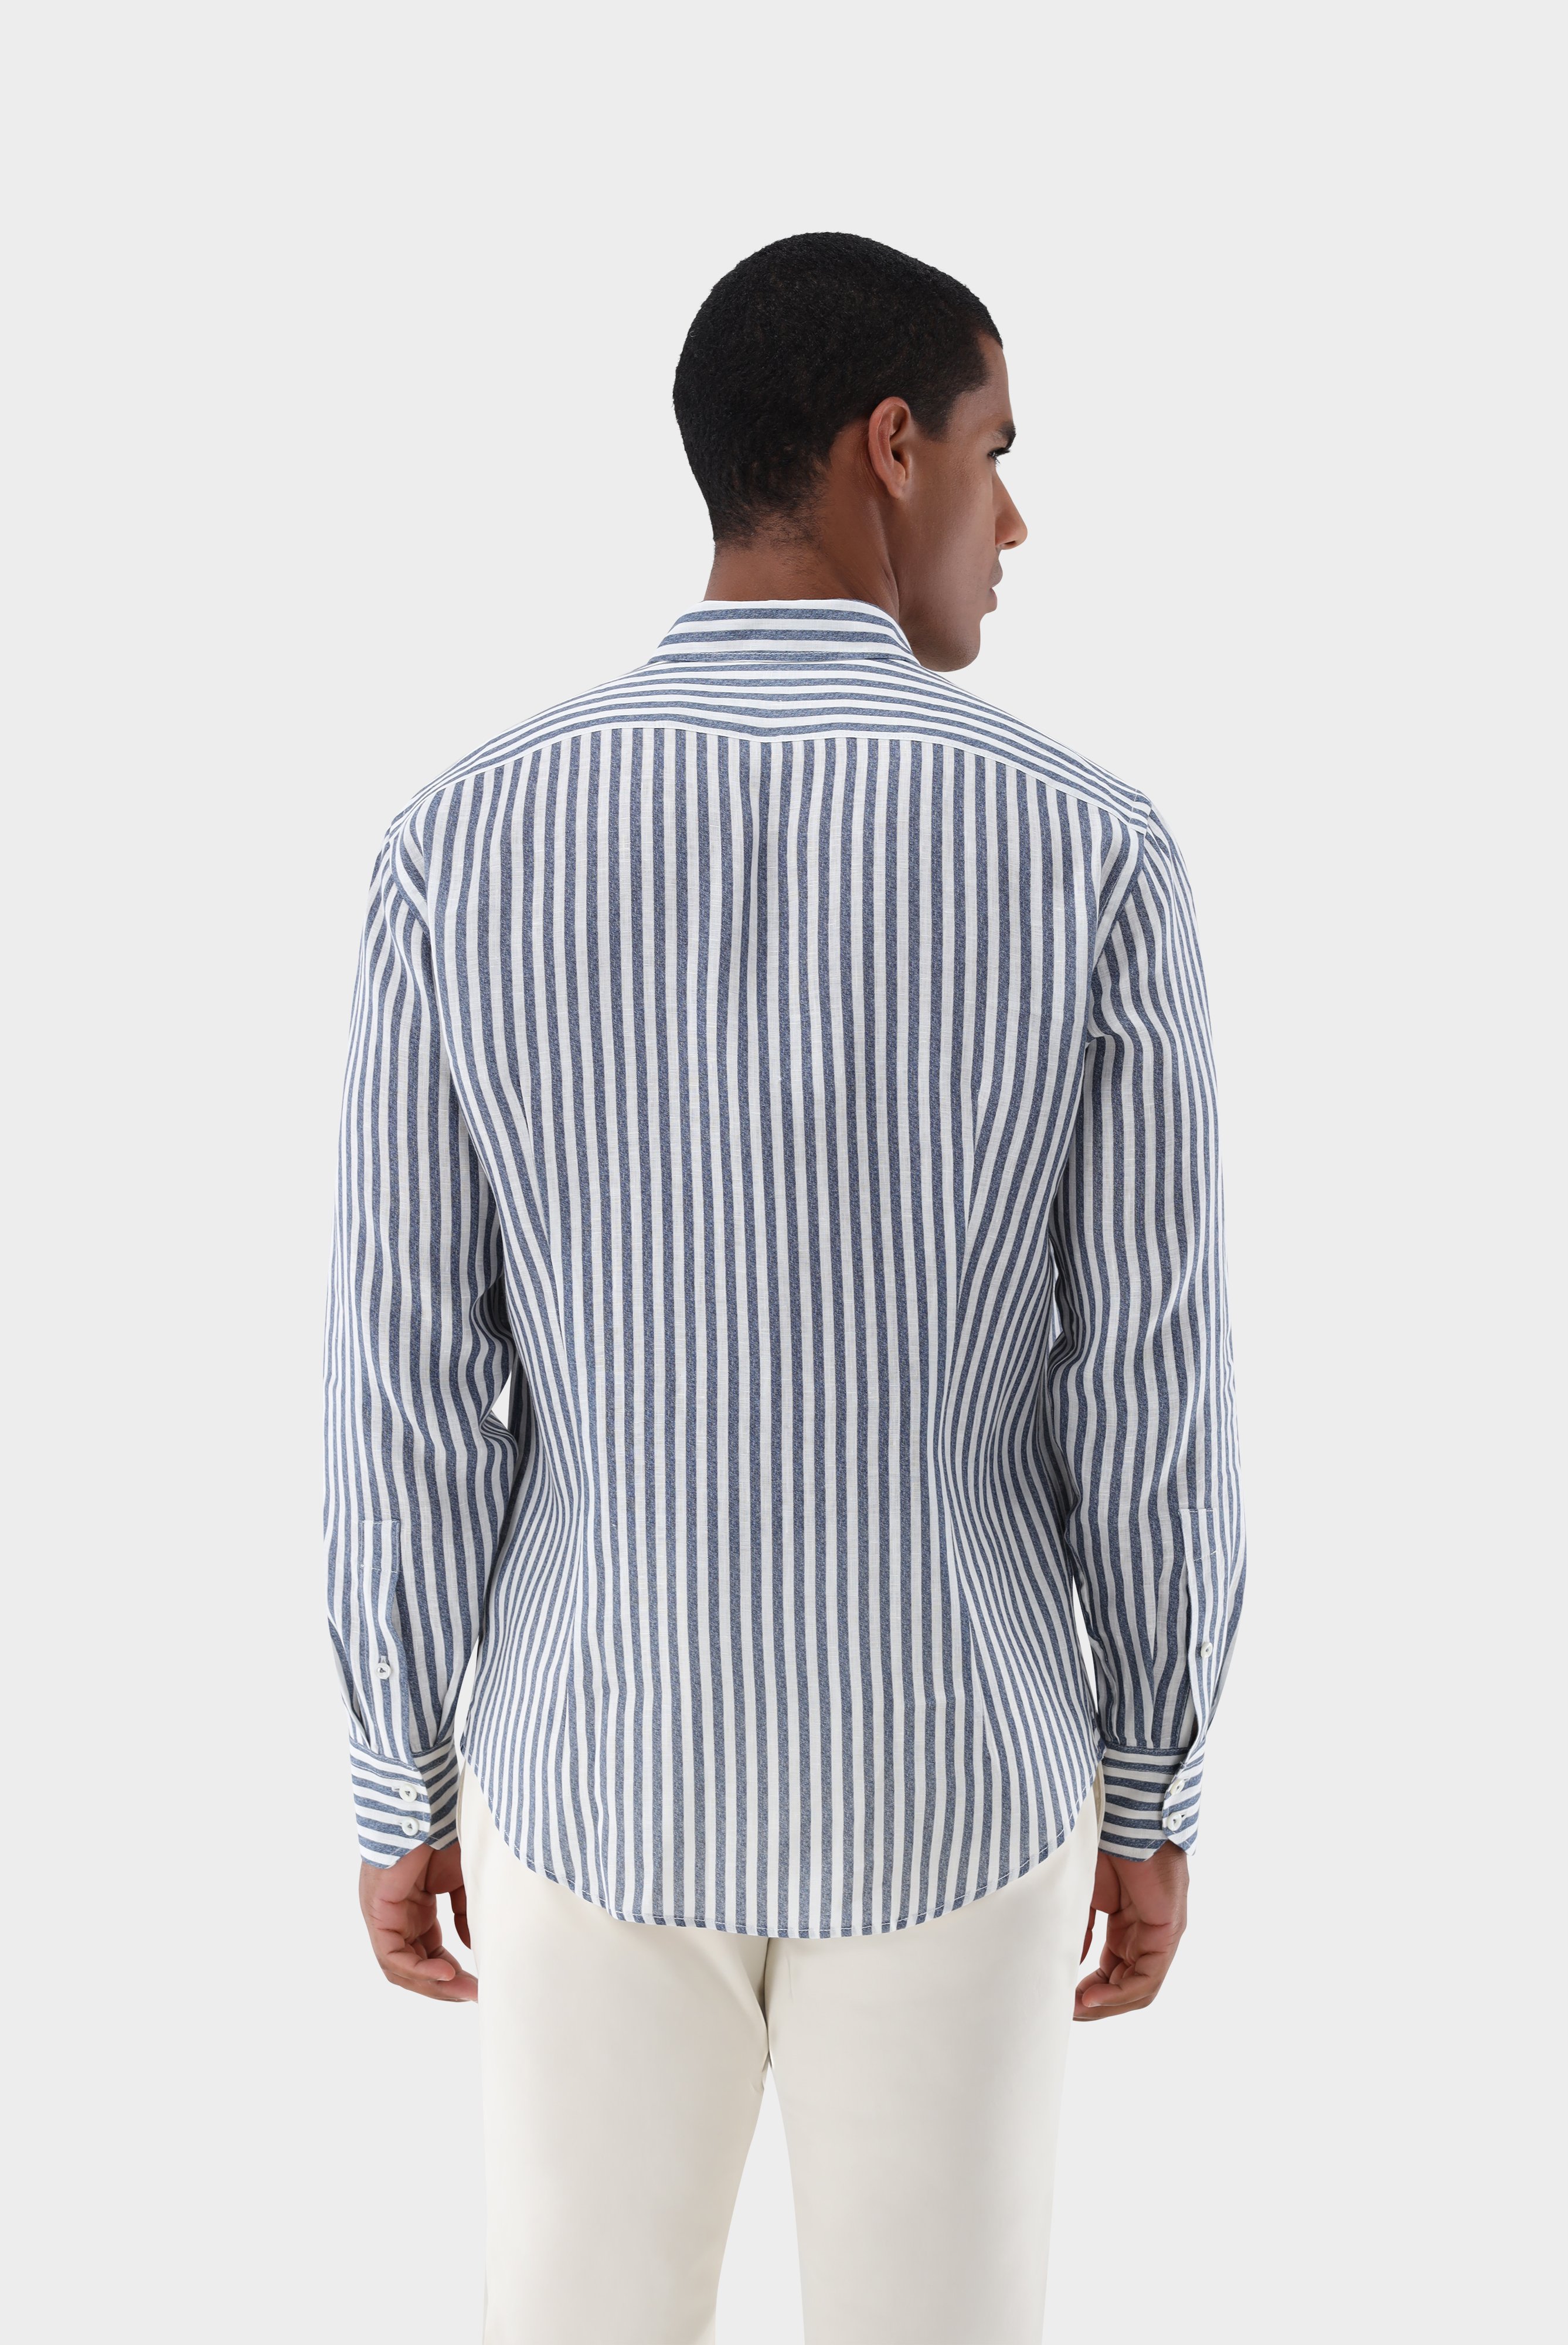 Casual Hemden+Leinenhemd mit Streifen-Druck Tailor Fit+20.2013.9V.170352.780.42